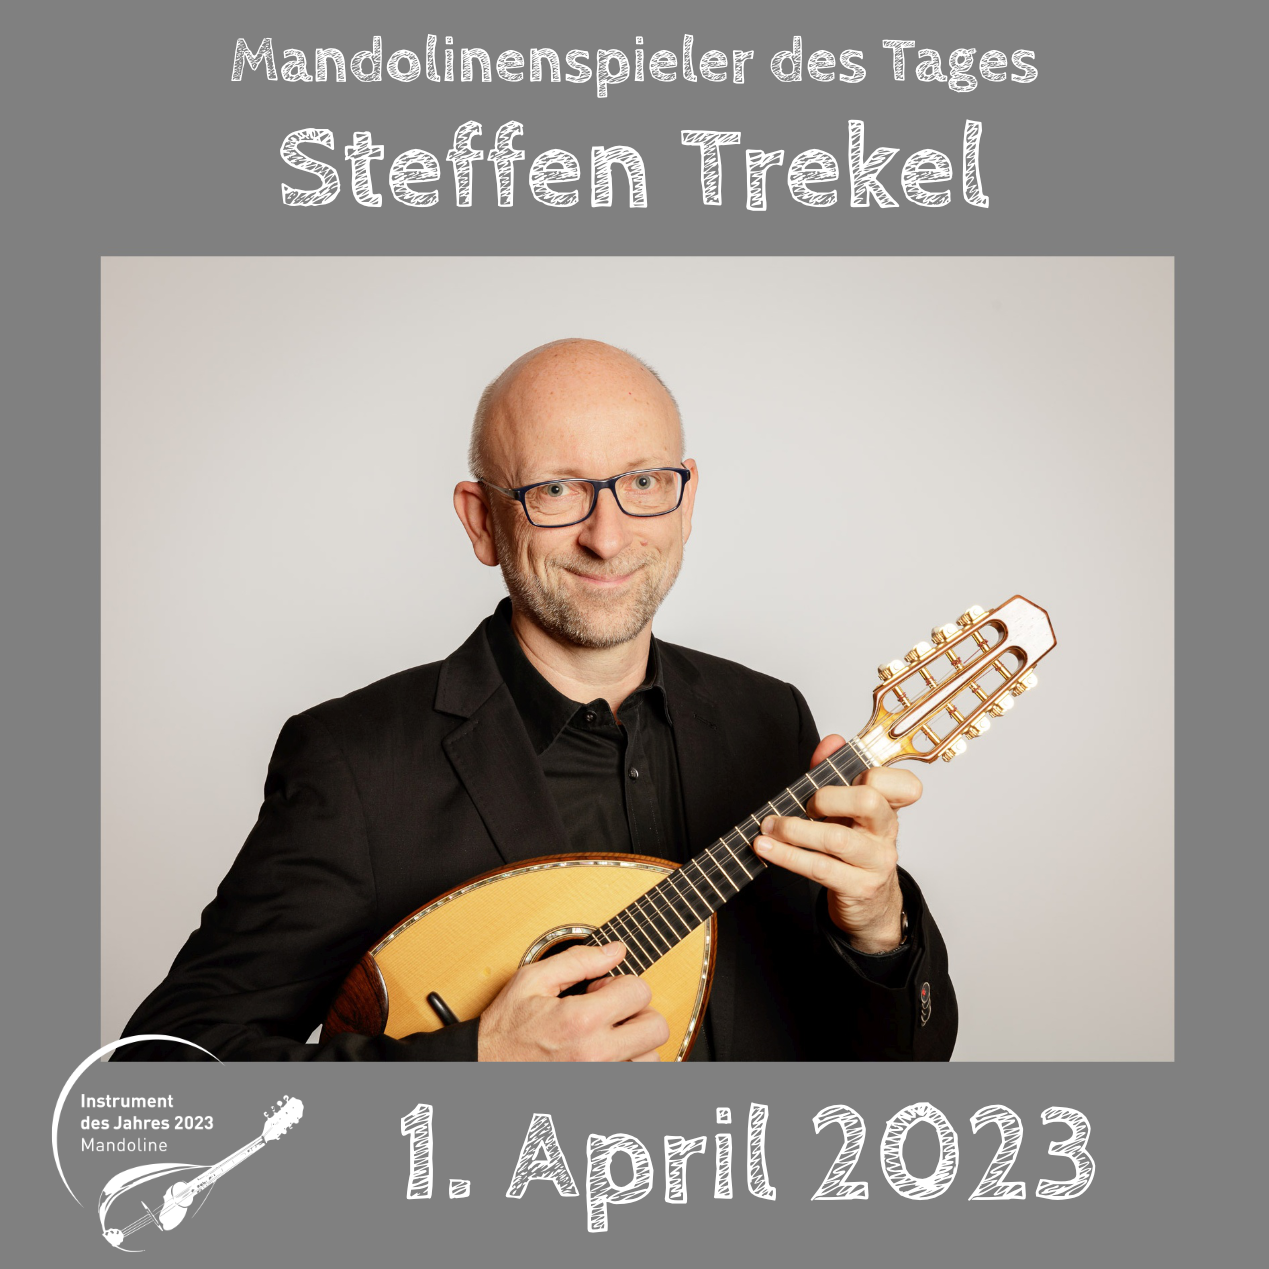 Steffen Trekel Instrument des Jahres 2023 Mandolinenspieler des Tages